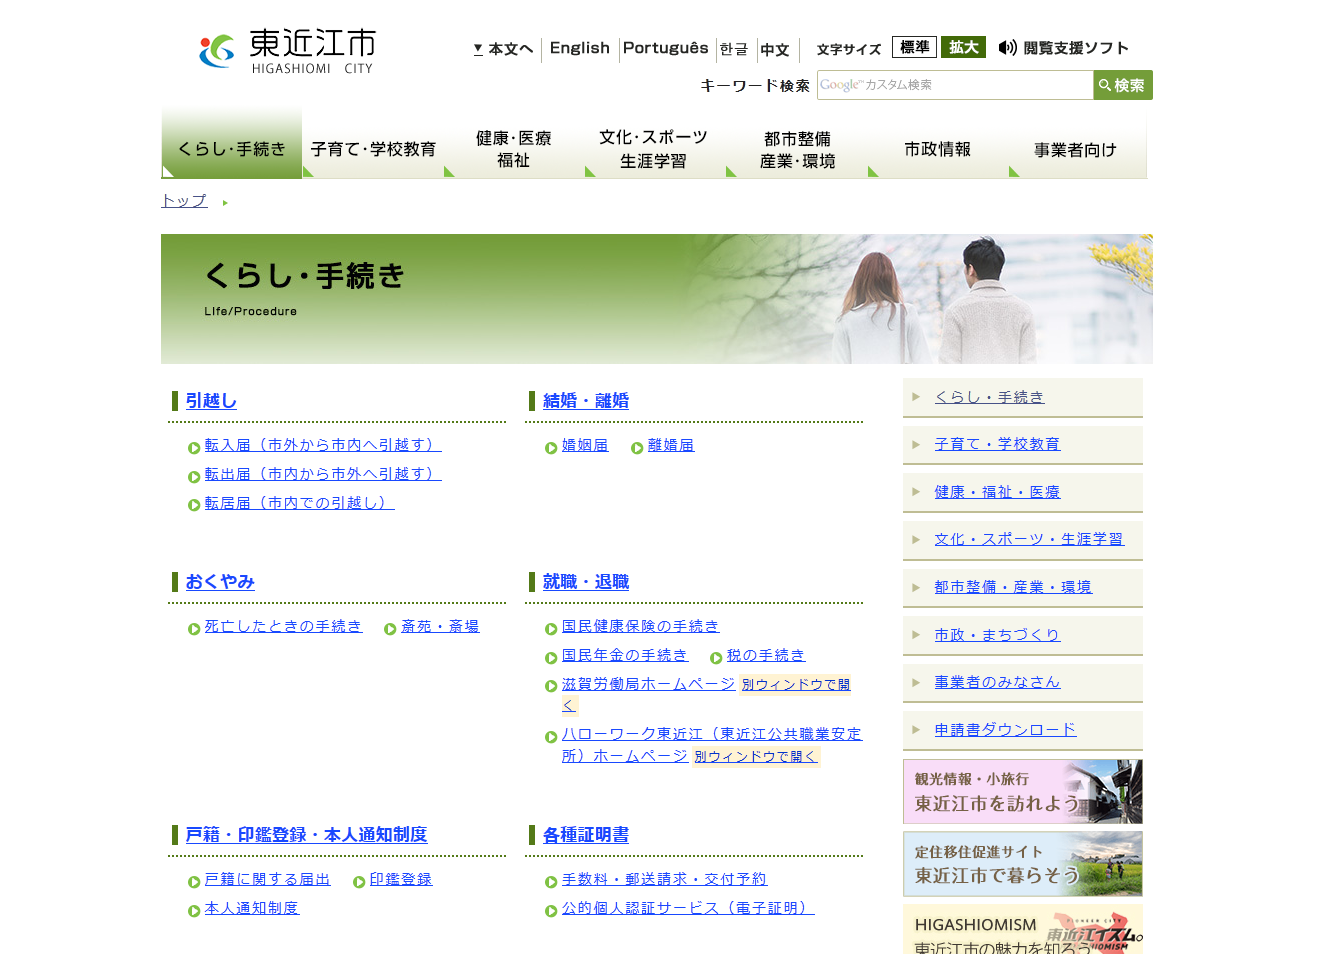 東近江市公式ホームページのくらし・手続きページキャプチャ画像